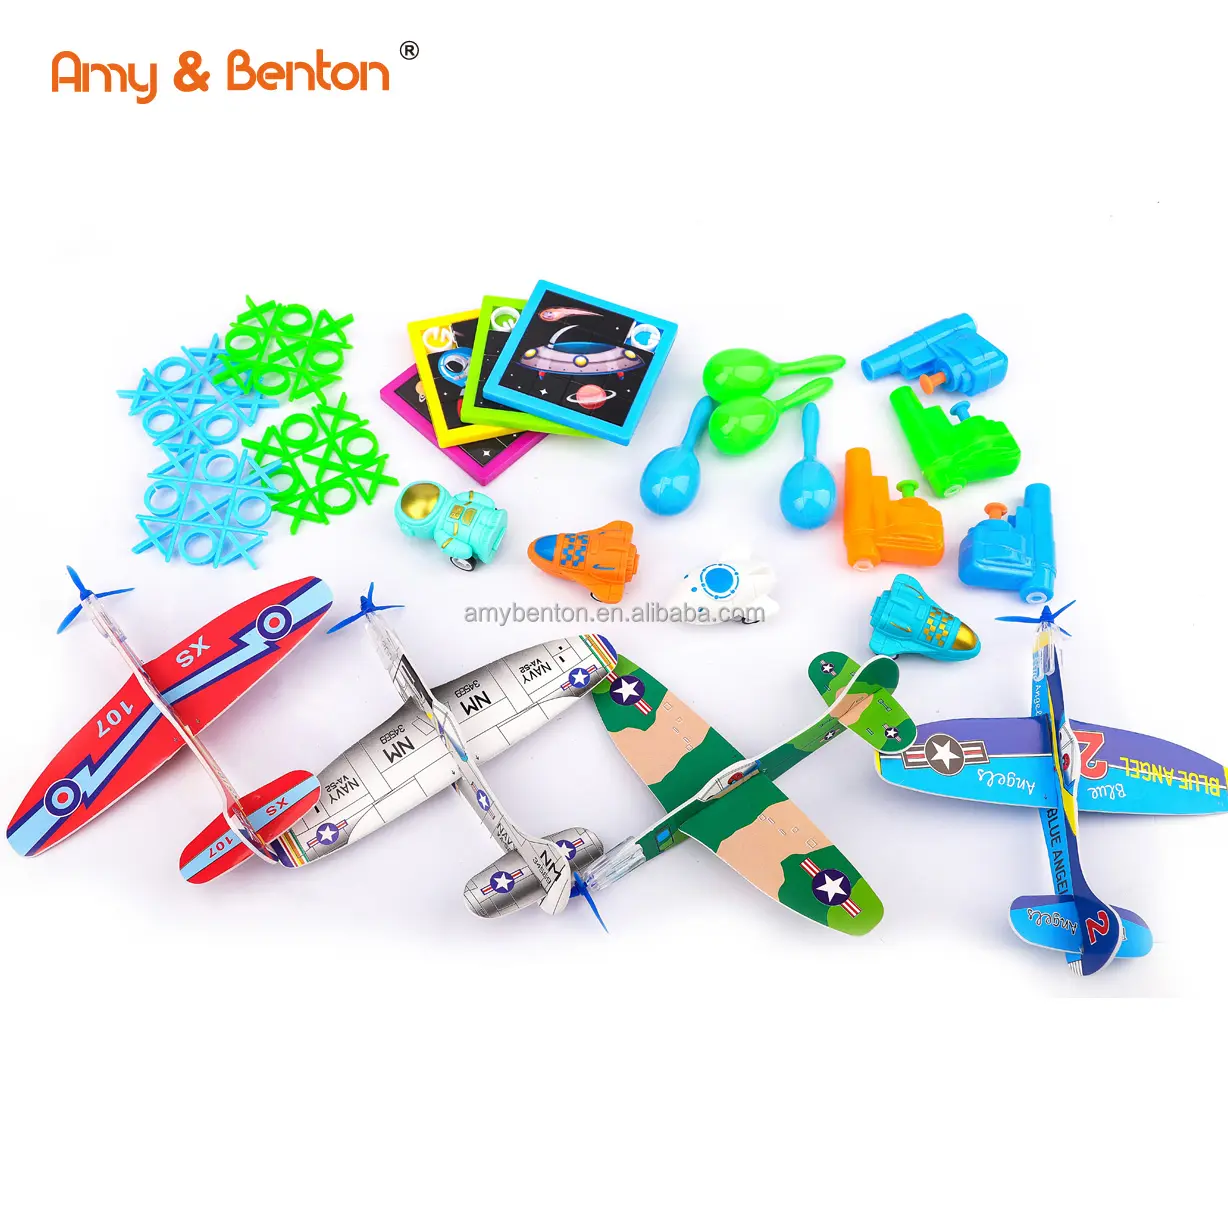 Petit jouet Premium Party Favors pour enfants Cadeau d'anniversaire Mini Toys Set Classroom Prices, Goodie Bag Stuffers